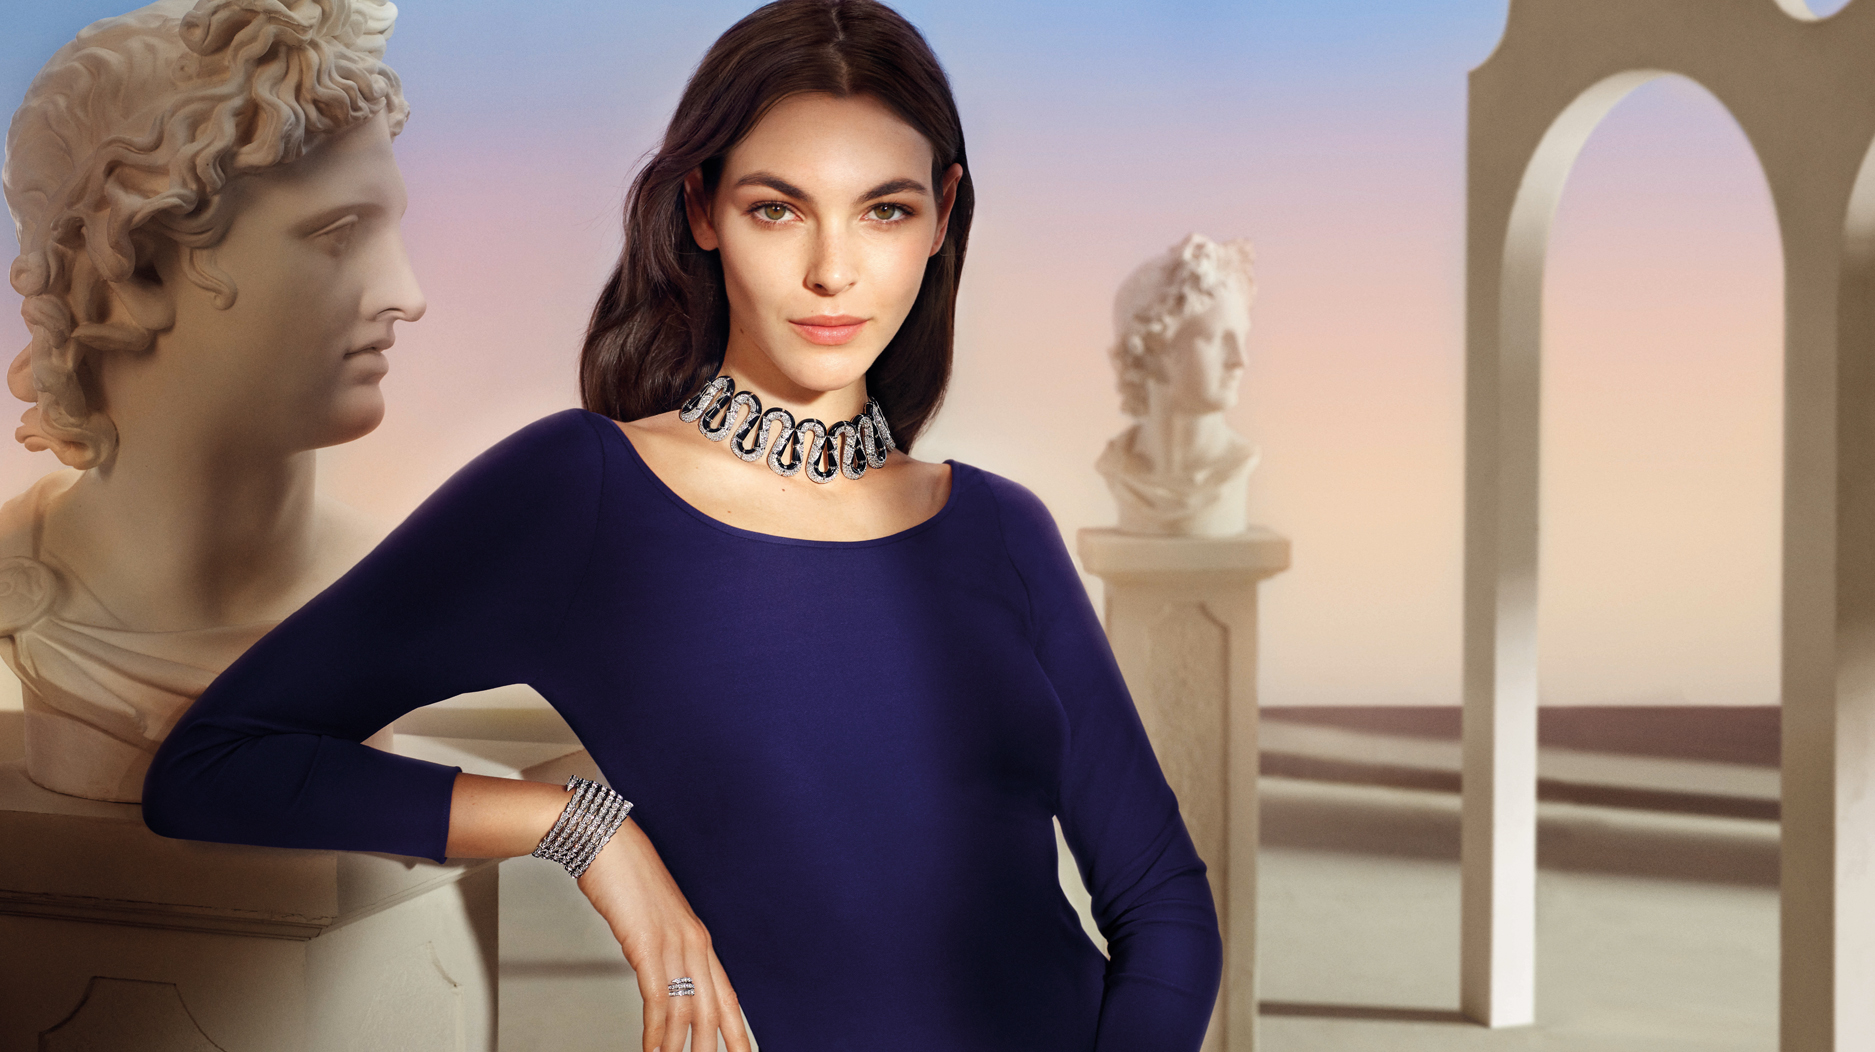 Celebrity Zendaya brand ambassador of Bulgari, models shape shifting iconic  Serpenti jewelry